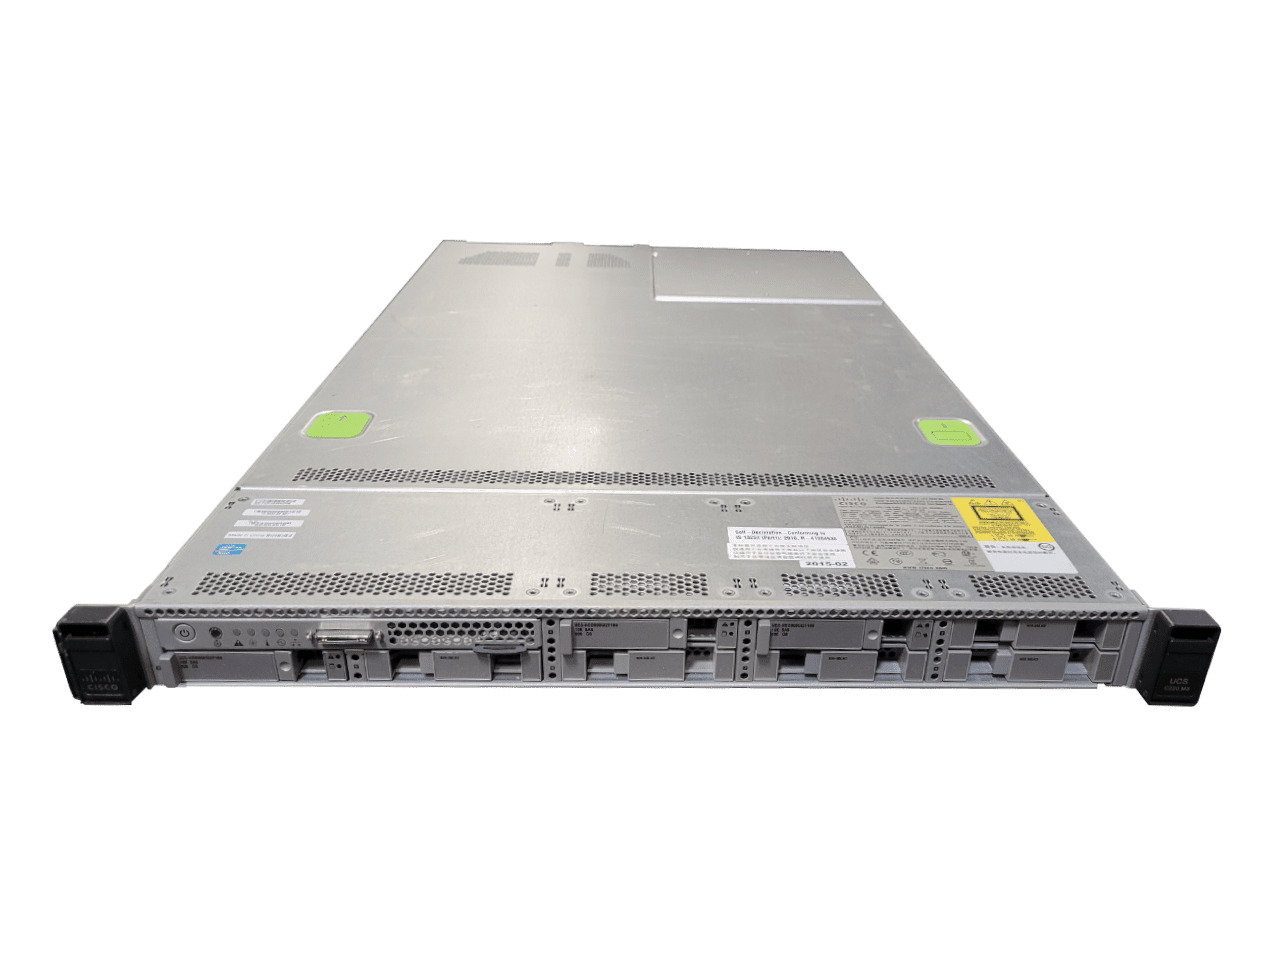 Cisco UCS C220 M3 1U 2x 6-Core Xeon E5-2620 2.0GHz / 64GB RAM / No HDD